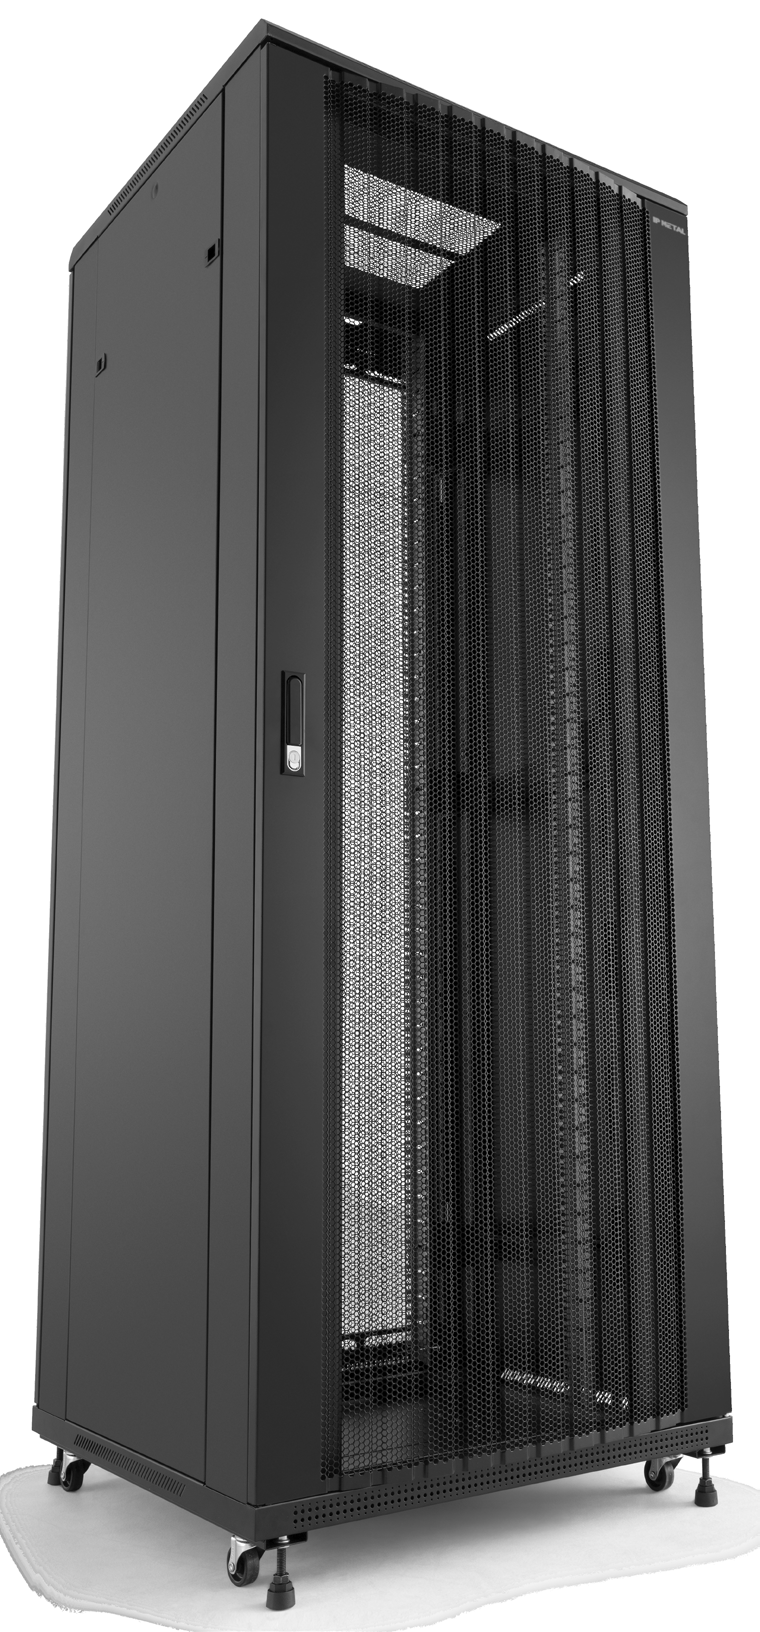 RACK 19 SERVIDOR Devido às perfurações hexagonais (colmeia) nas portas frontal e traseira, os Racks para servidores são ideais para uso em Data Centers e ambientes climatizados.